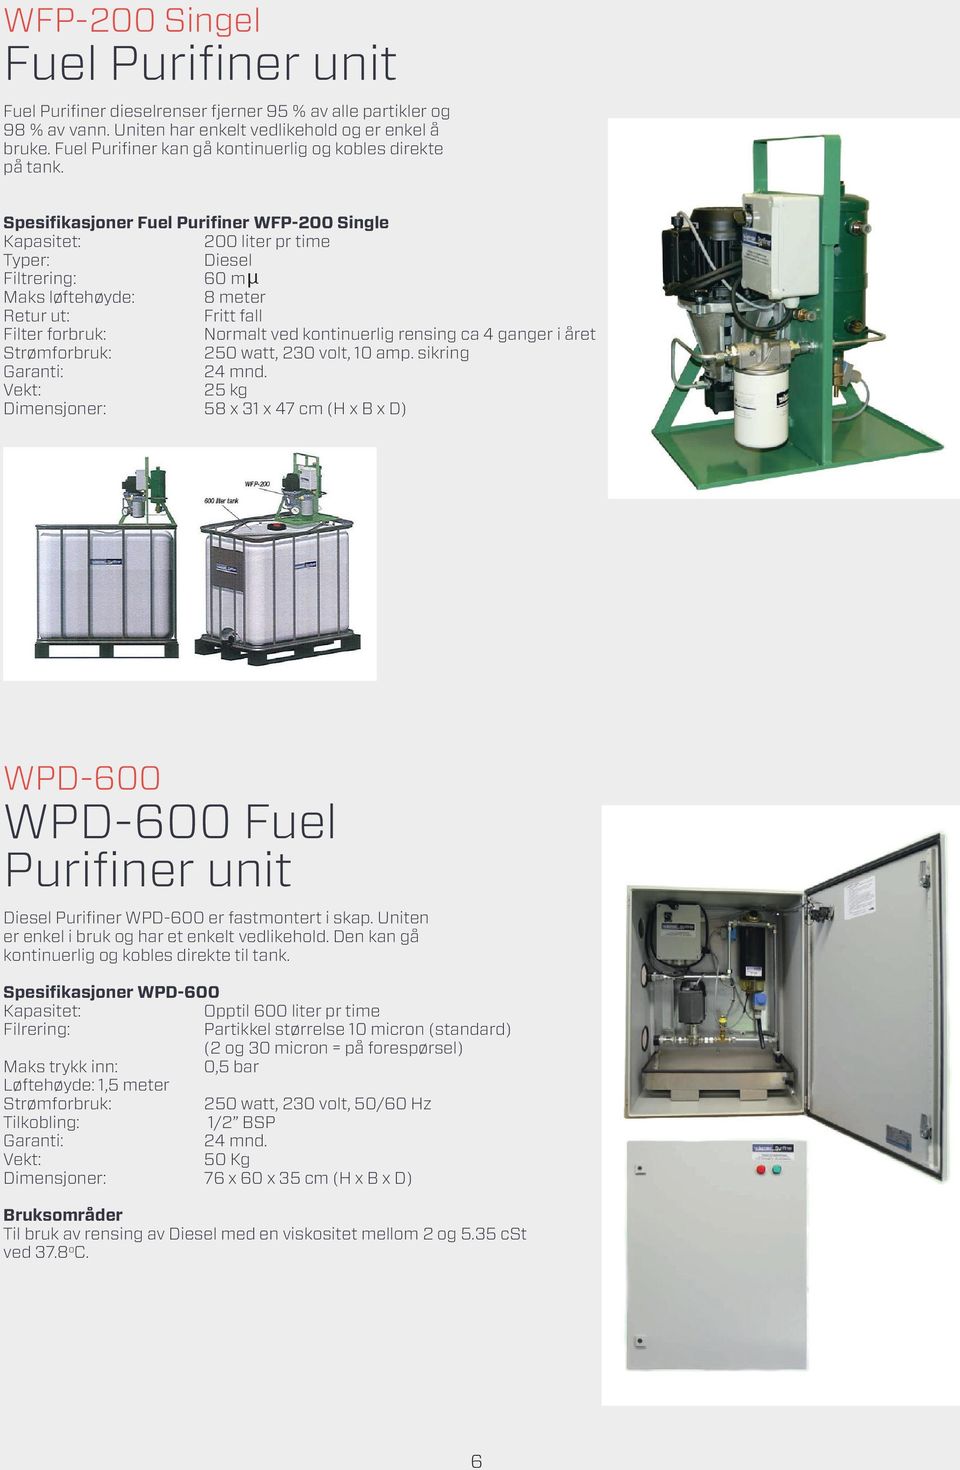 spesifikasjoner Fuel Purifiner wfp-200 single kapasitet: 200 liter pr time typer: diesel filtrering: 60 m maks løftehøyde: 8 meter retur ut: fritt fall filter forbruk: normalt ved kontinuerlig